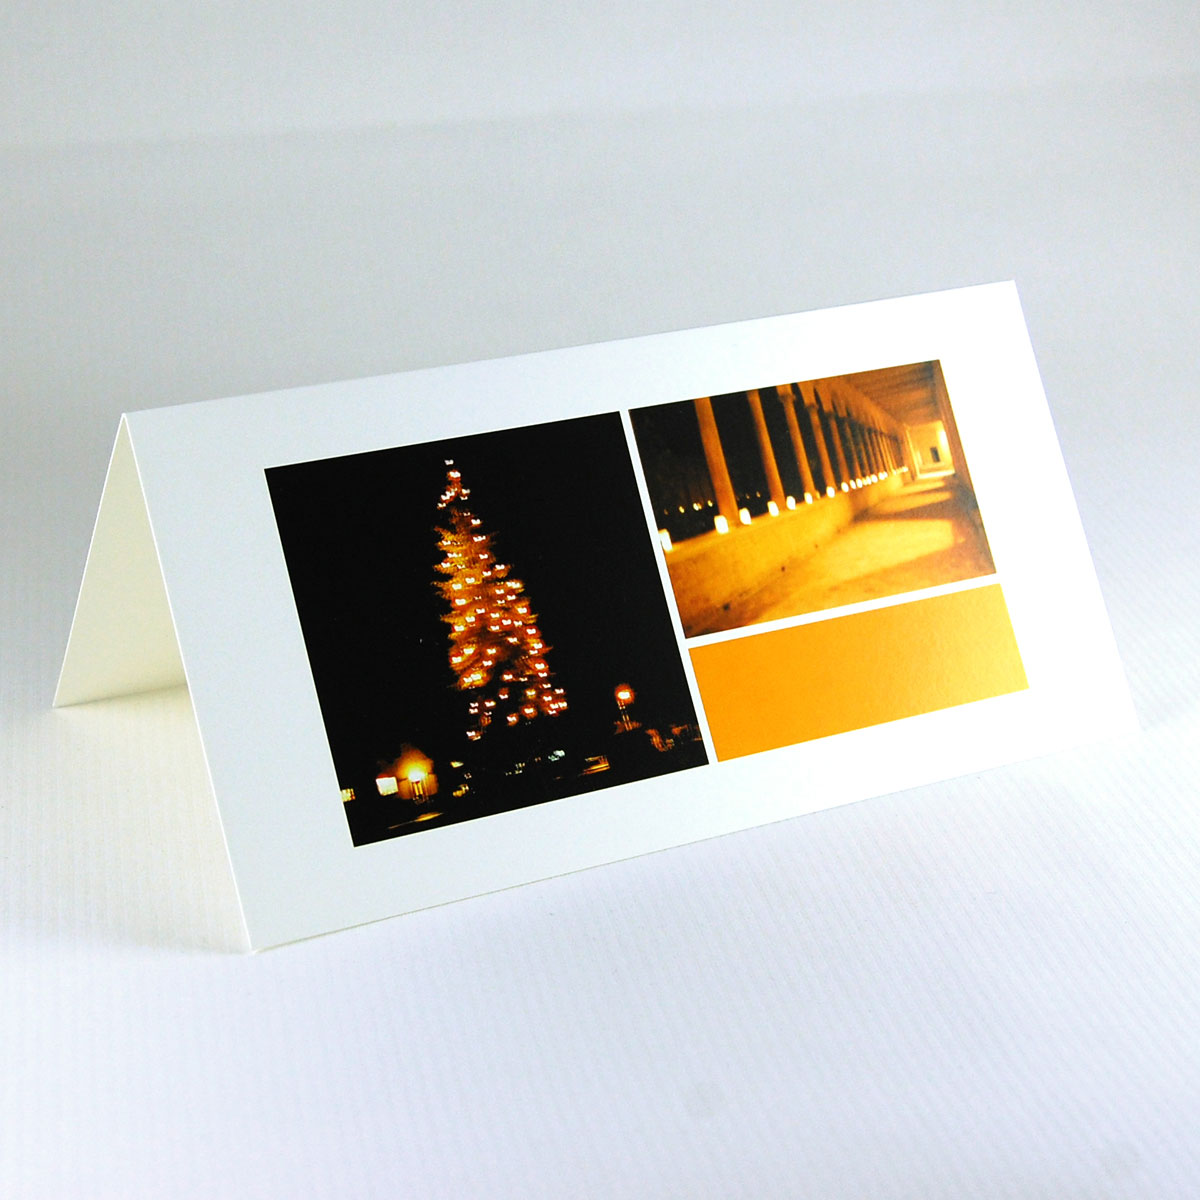 Weihnachtsbaum und Lichterweg - stimmungsvolle Weihnachtskarten mit unscharfen Fotos